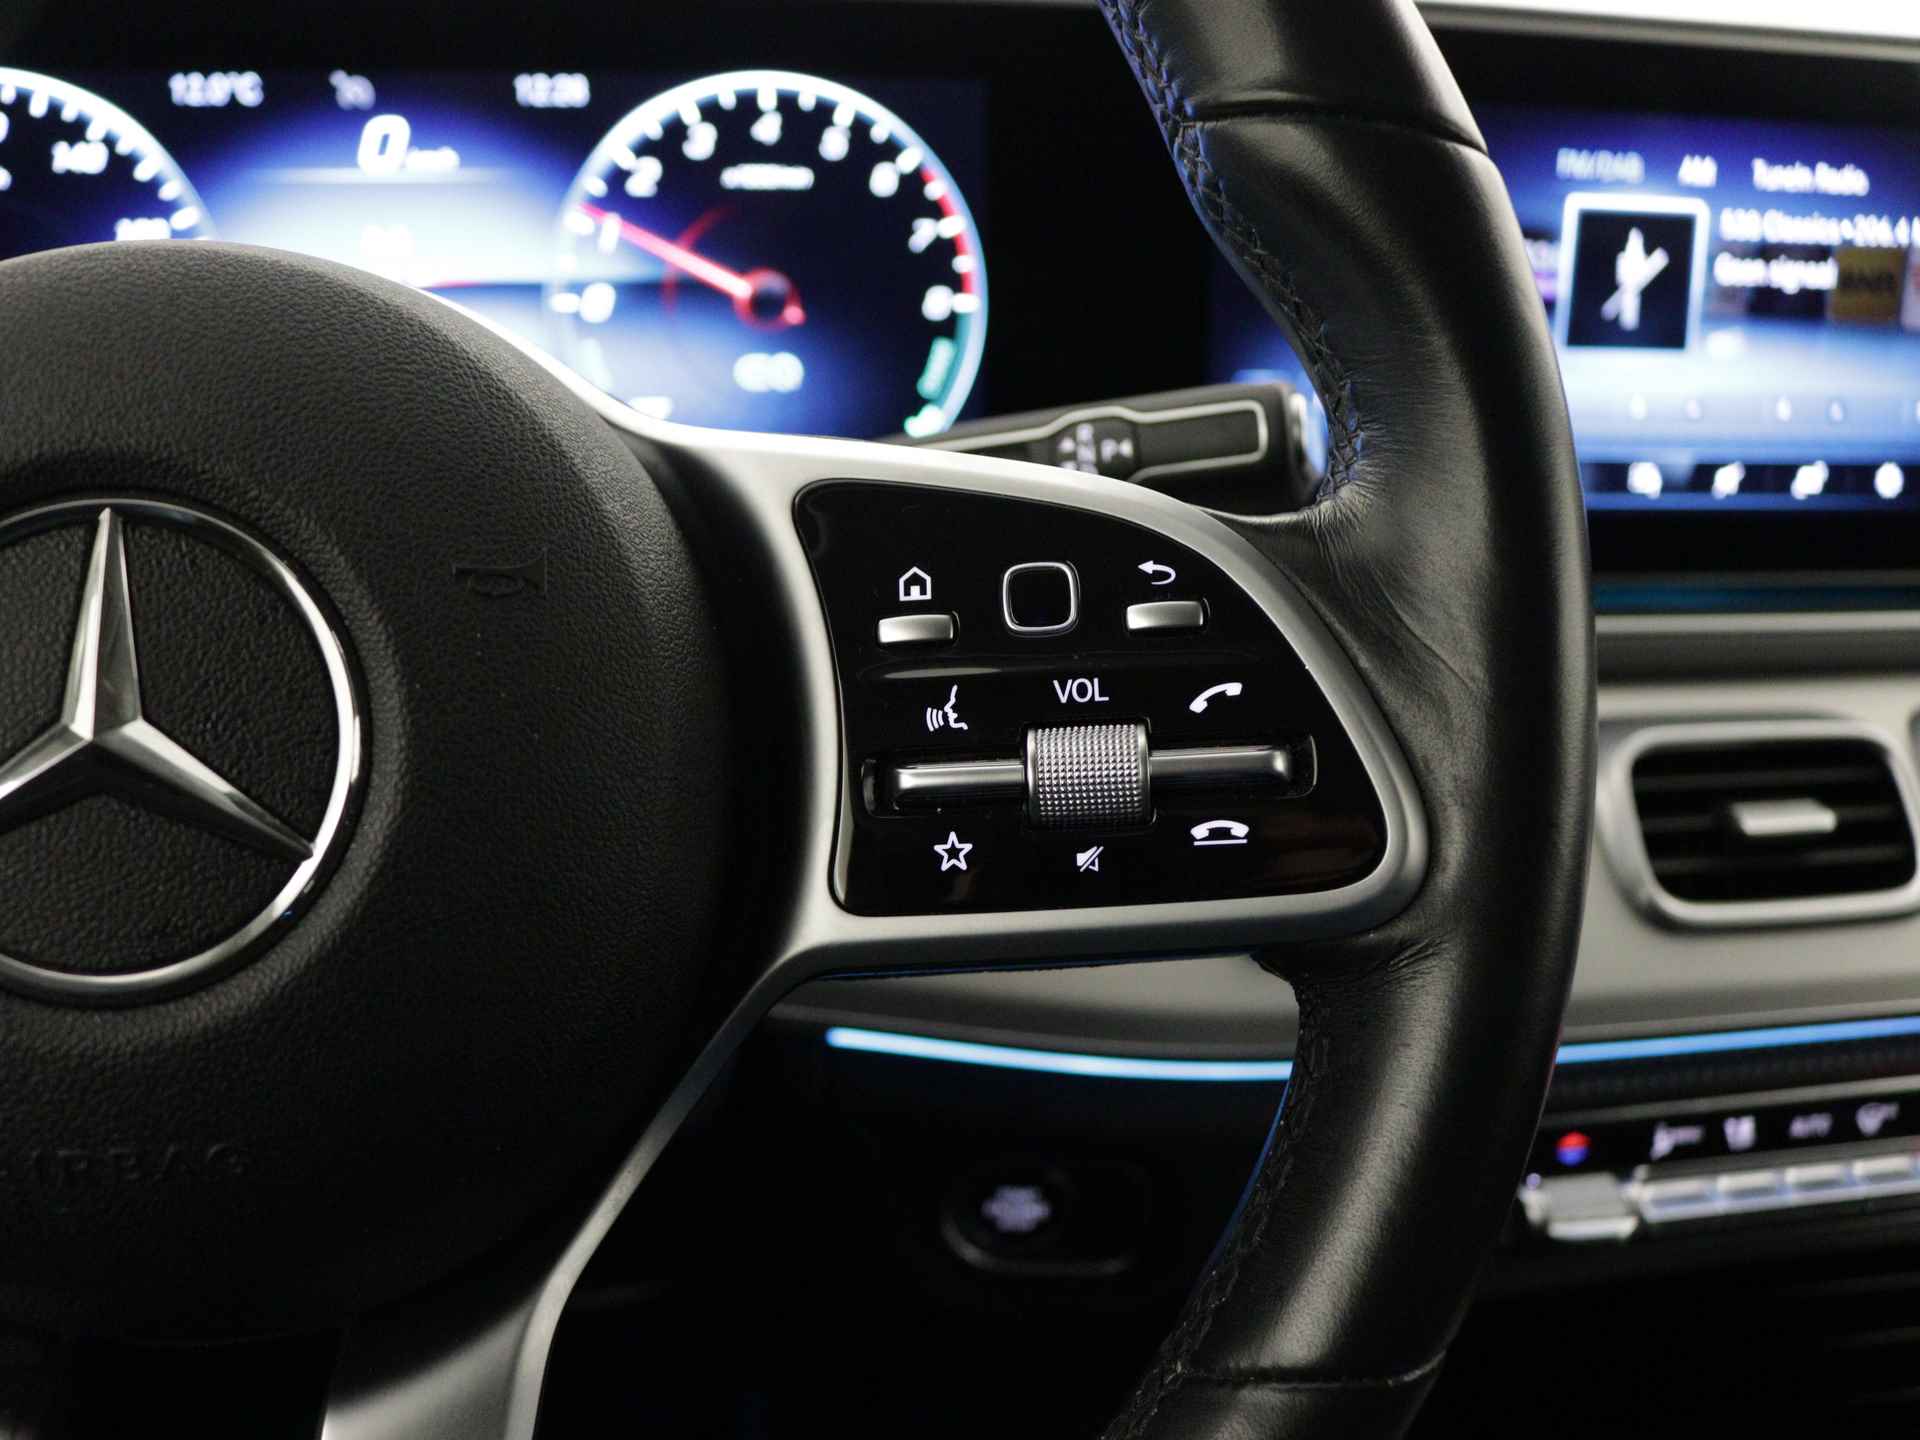 Mercedes-Benz GLE 350 e 4-MATIC AMG Nightpakket Limited 5 spaaks lichtmetalen velgen | Trekhaak | Airmatic | Treeplanken | Alarm klasse 3 |  Augmented Reality | sfeerverlichting | DAB | Parking support | inclusief 24 maanden MB Certified garantie voor europa - 23/45